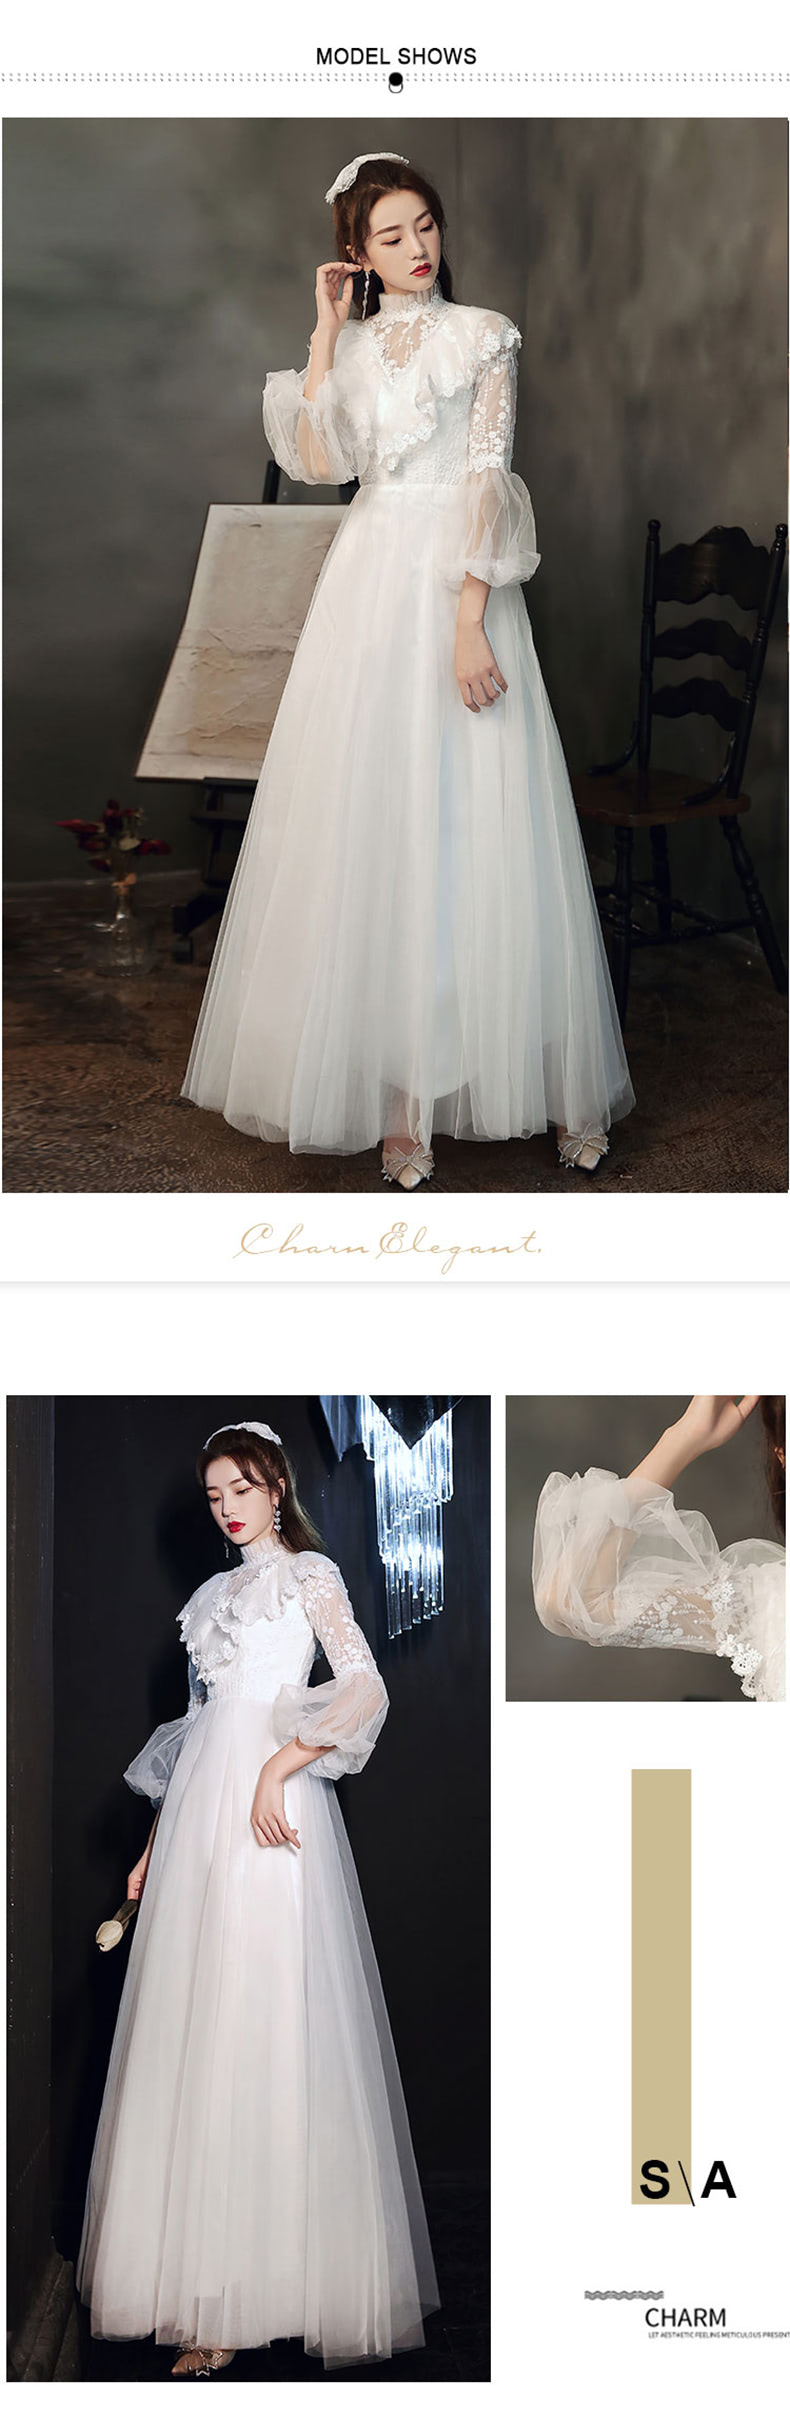 Elegant-Long-Sleeve-White-Maxi-Dress-Prom-Dance-Ball-Gown10.jpg